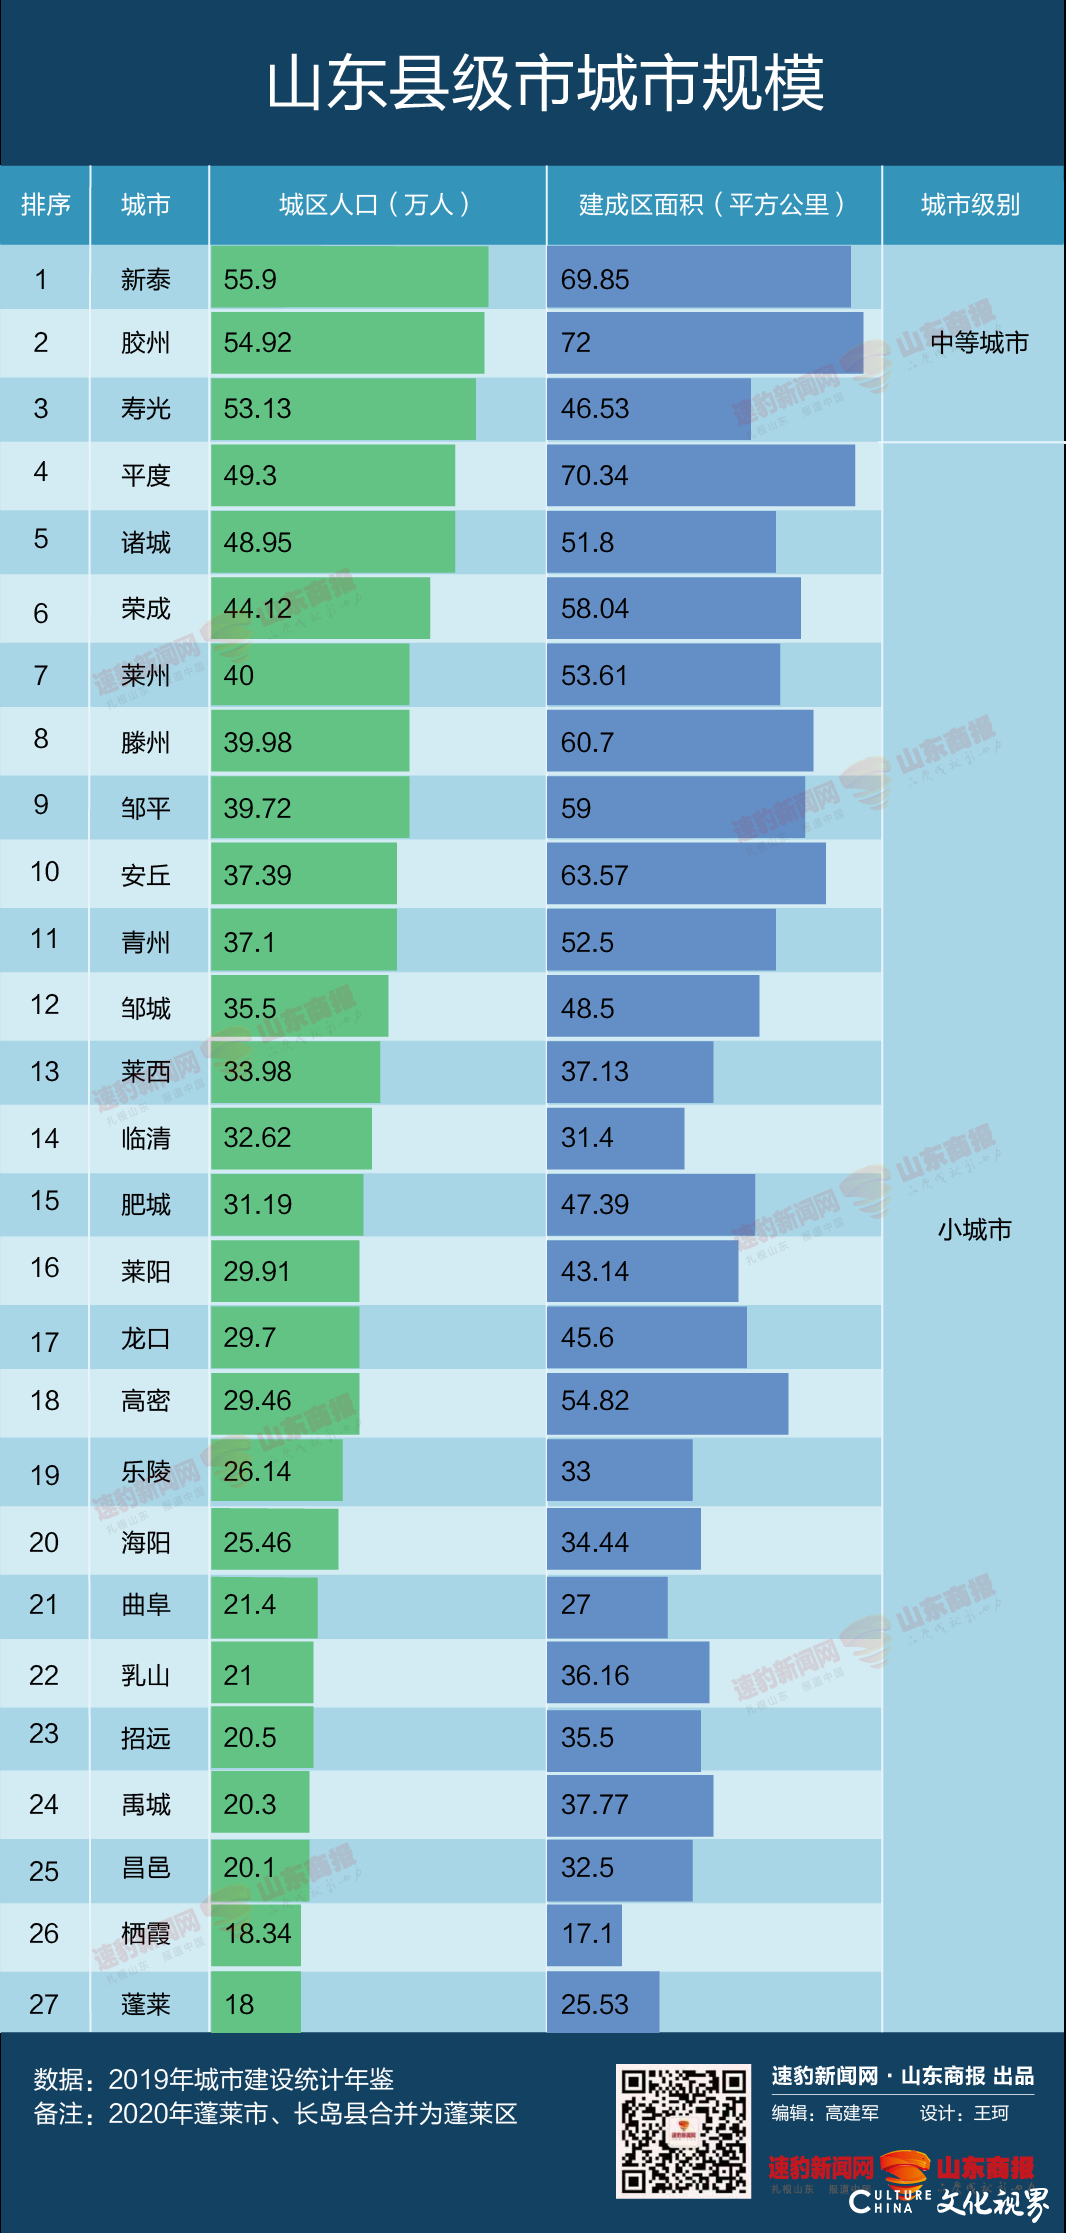 山东县级市“规模层级”最新排名出炉，新泰、胶州、寿光三个县级市步入中等城市行列